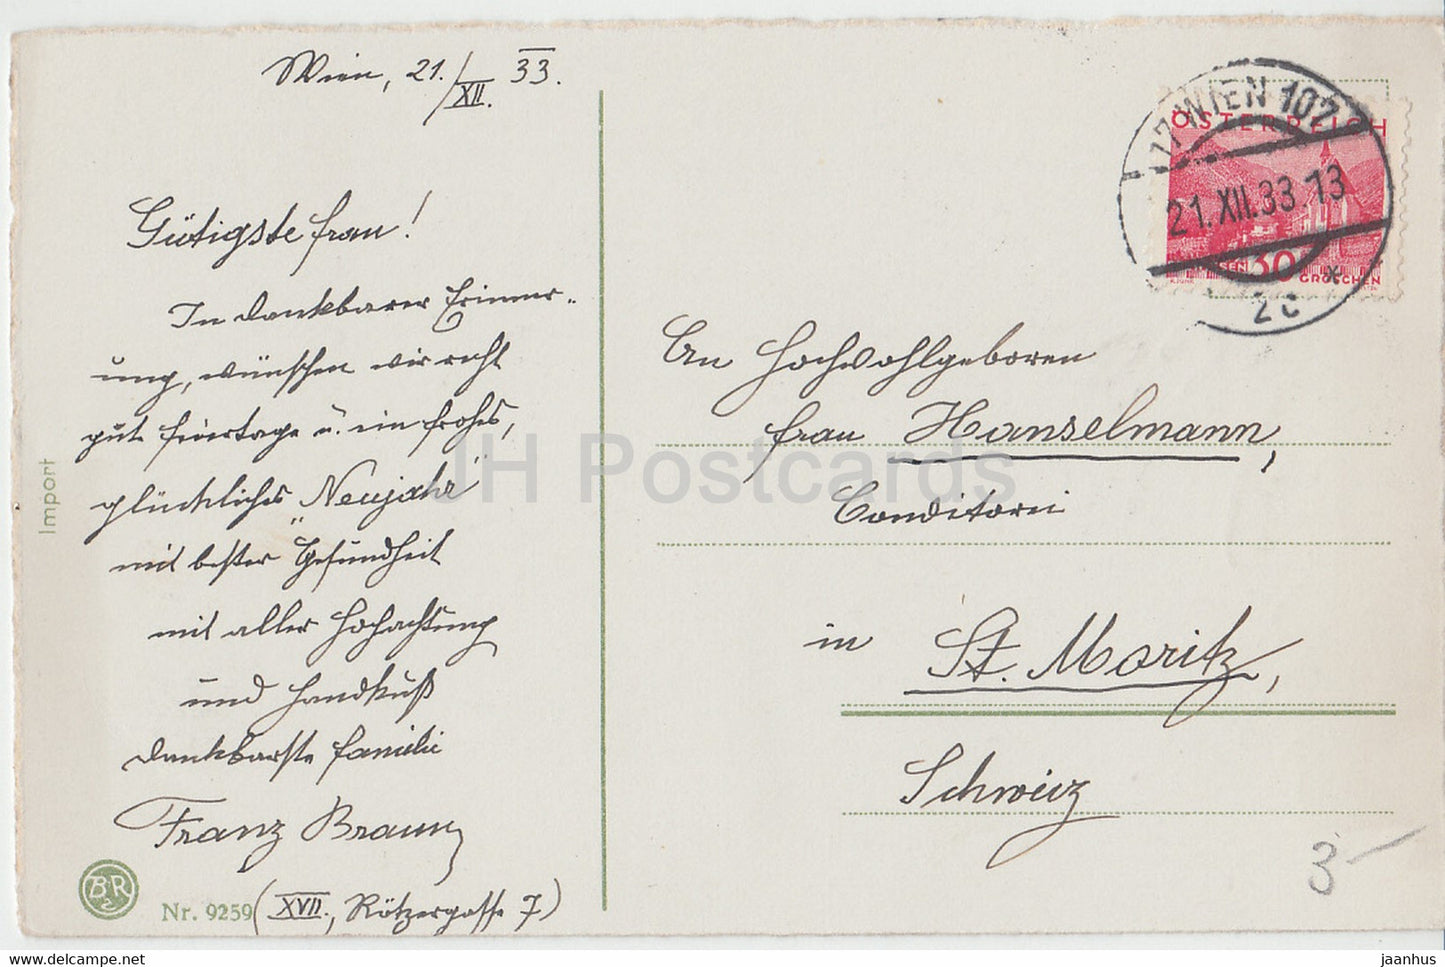 Carte de vœux de Noël - Ein Frohes Weihnachtsfest - église - BR 9259 - carte postale ancienne - 1933 - Allemagne - utilisé